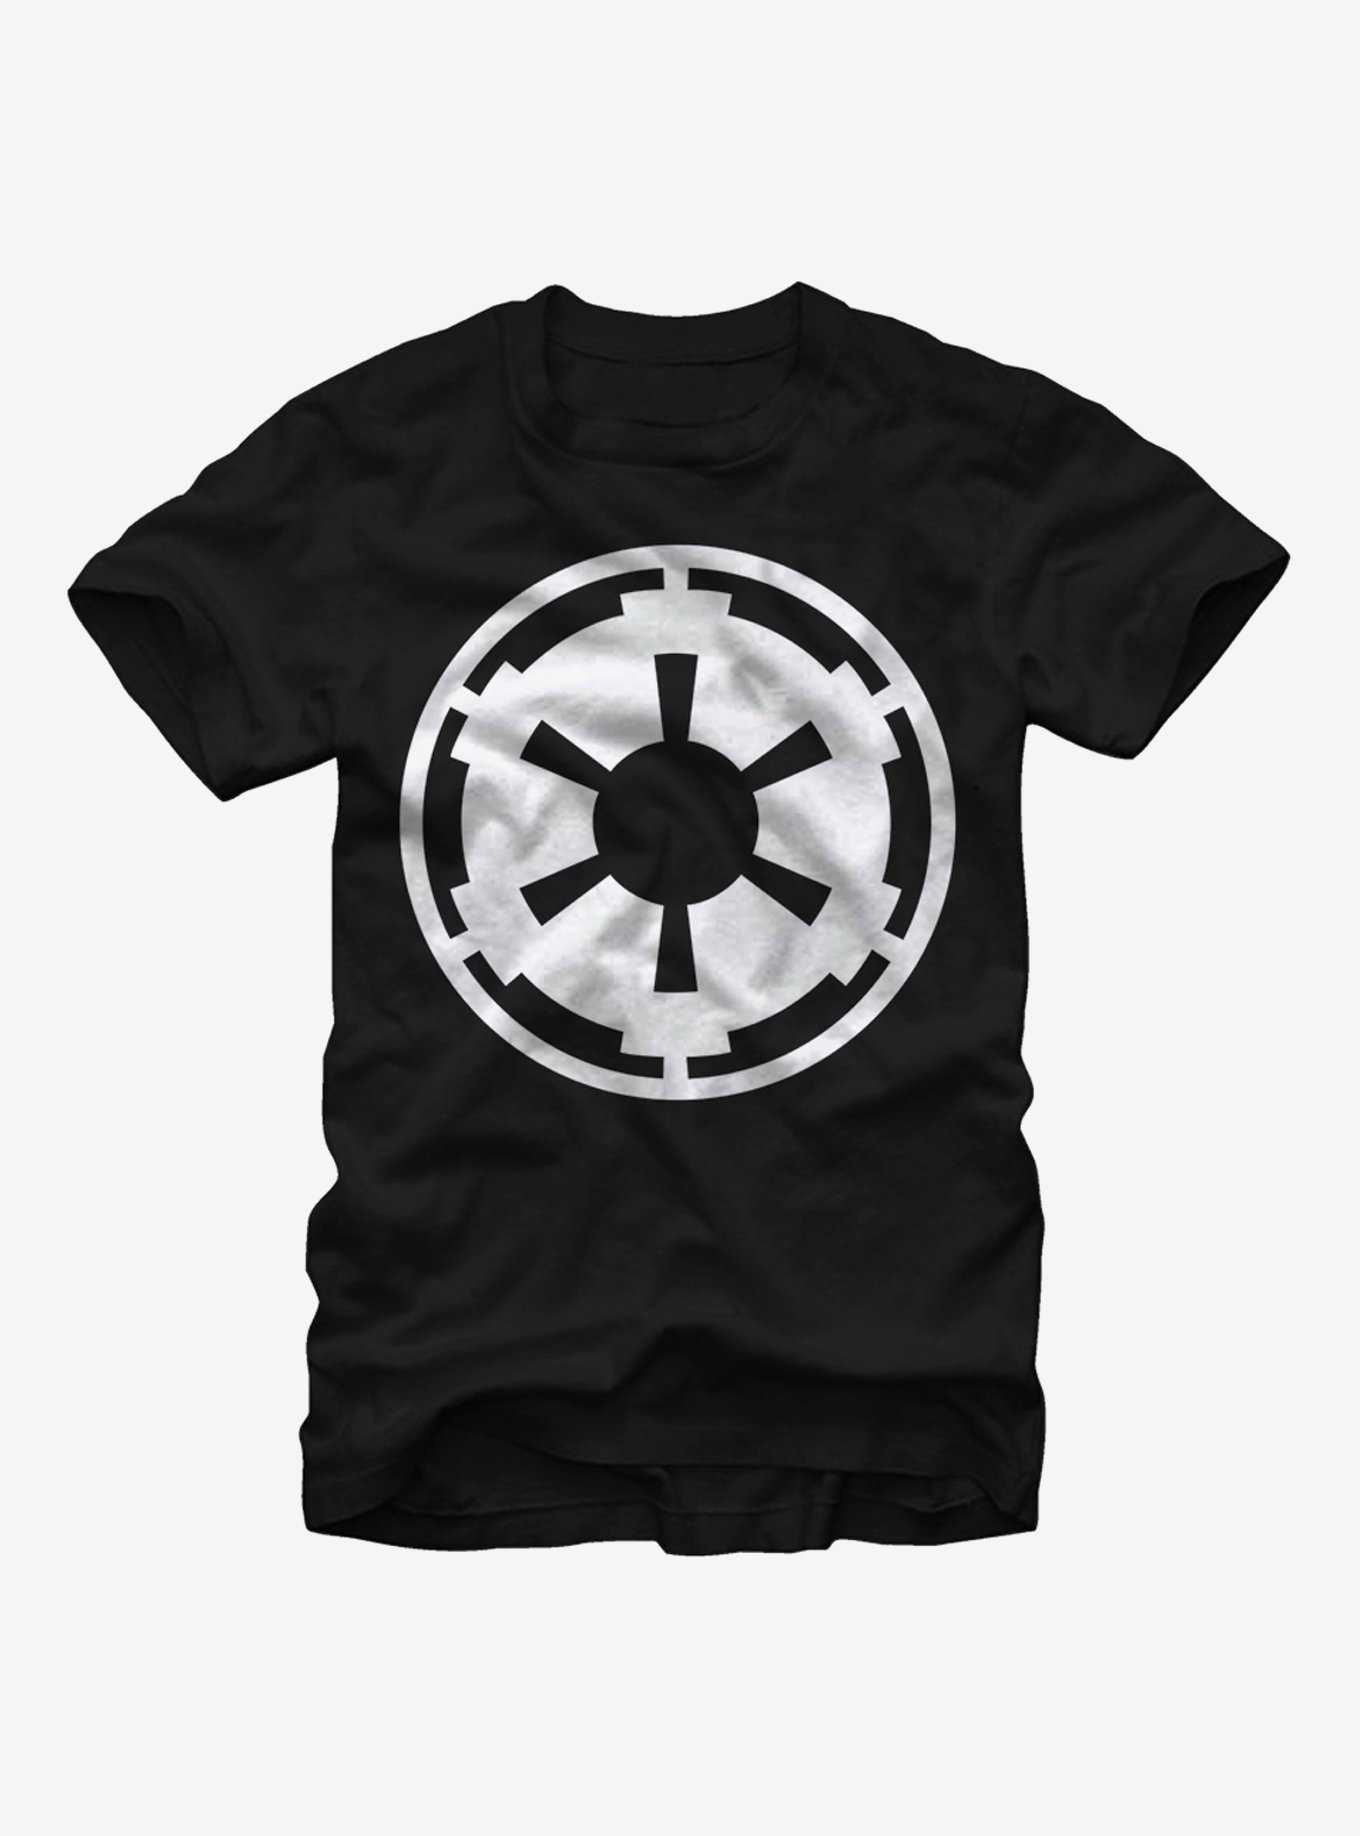 Star Wars Empire Emblem T-Shirt, , hi-res